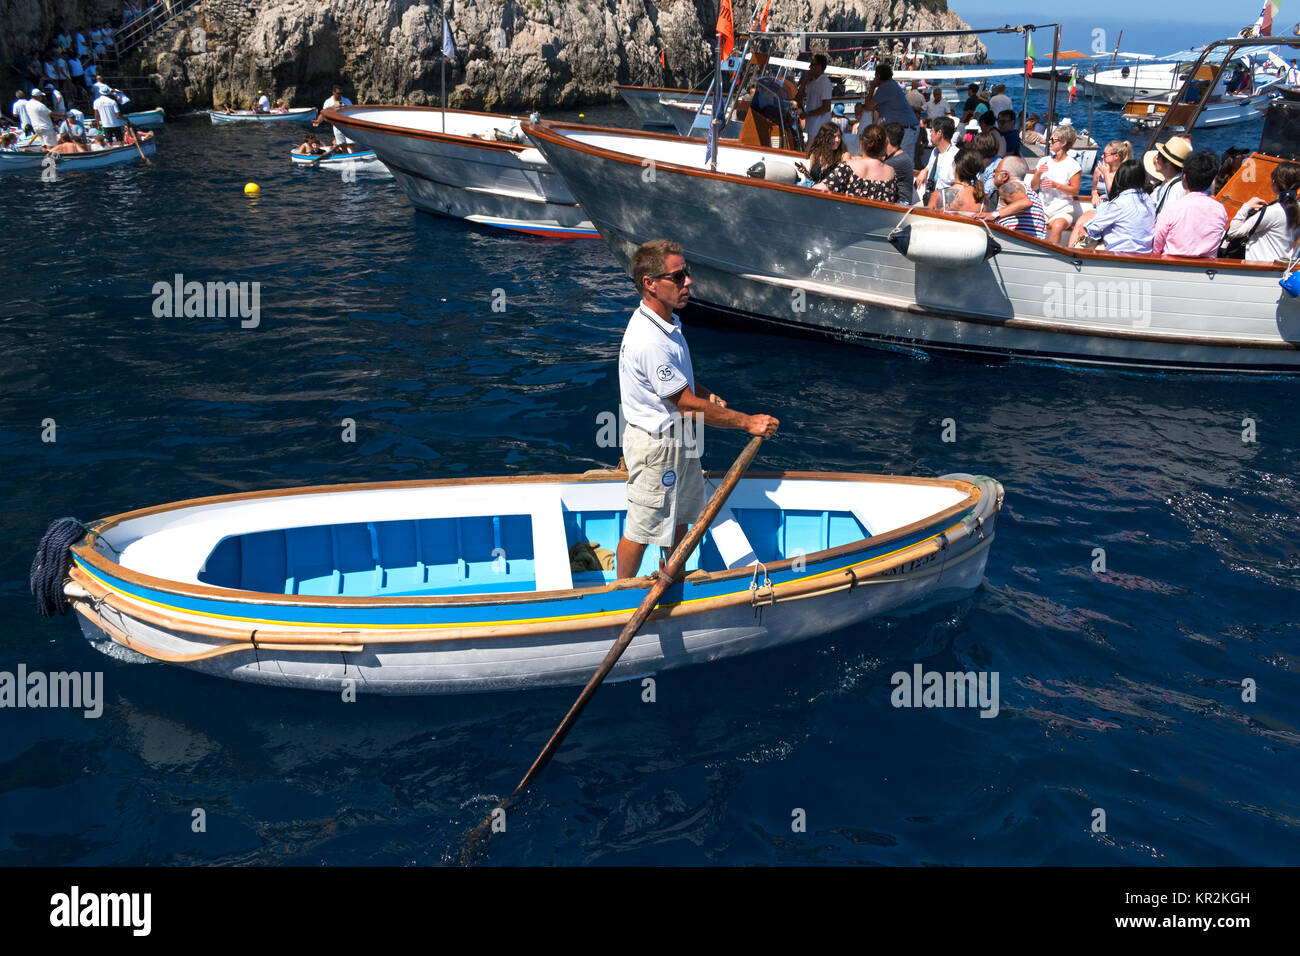 Un guide attend dans son bateau pour transporter les touristes dans la célèbre grotte bleue sur l'île de cpari, Italie. Banque D'Images